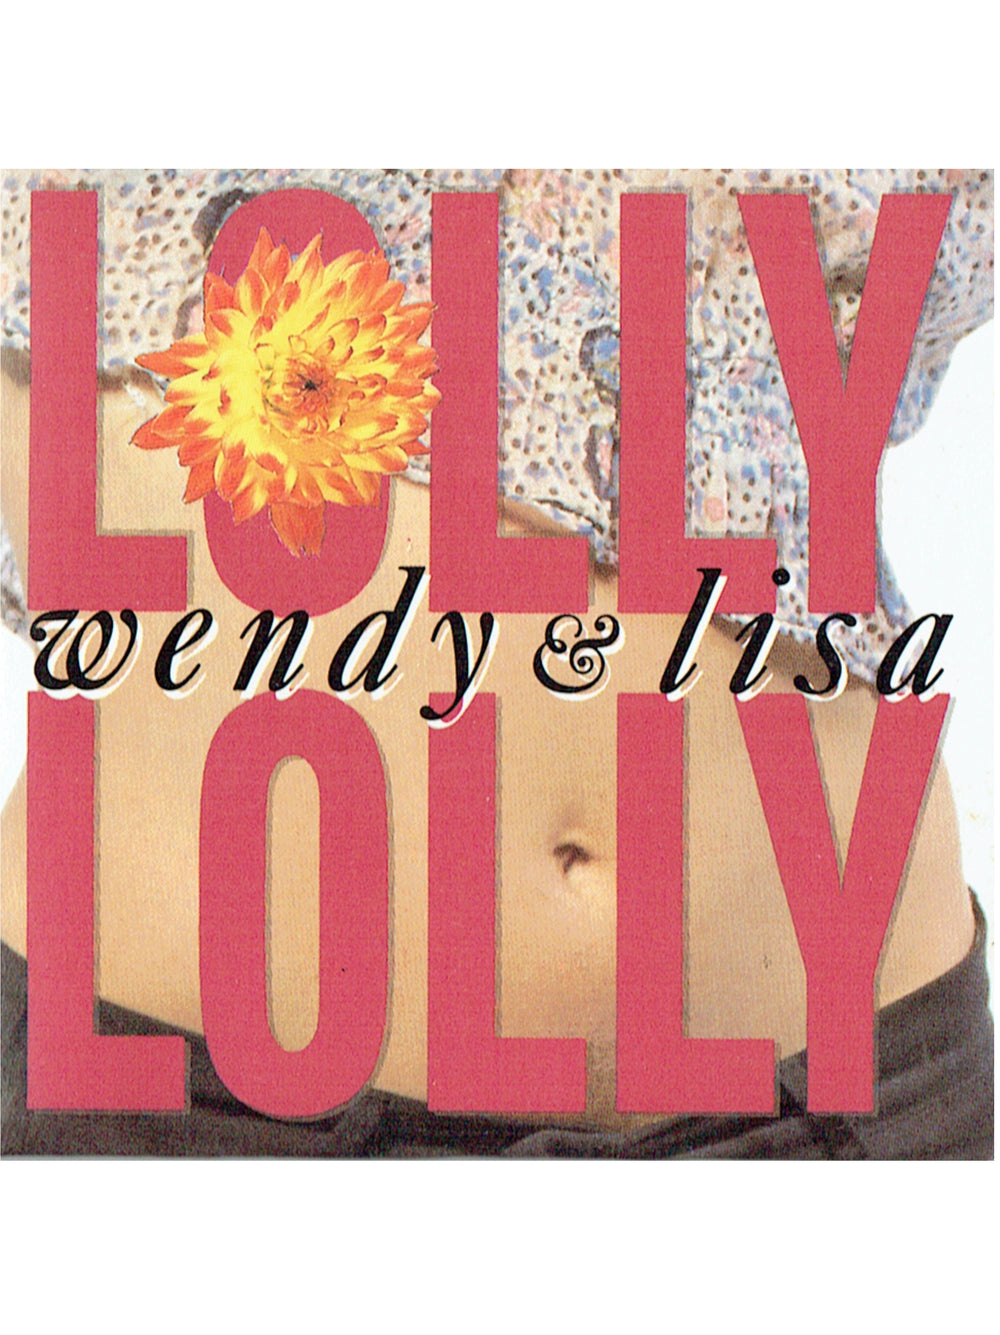 Prince – Wendy & Lisa Lolly Lolly CD Mini Single EU Preloved: 1989